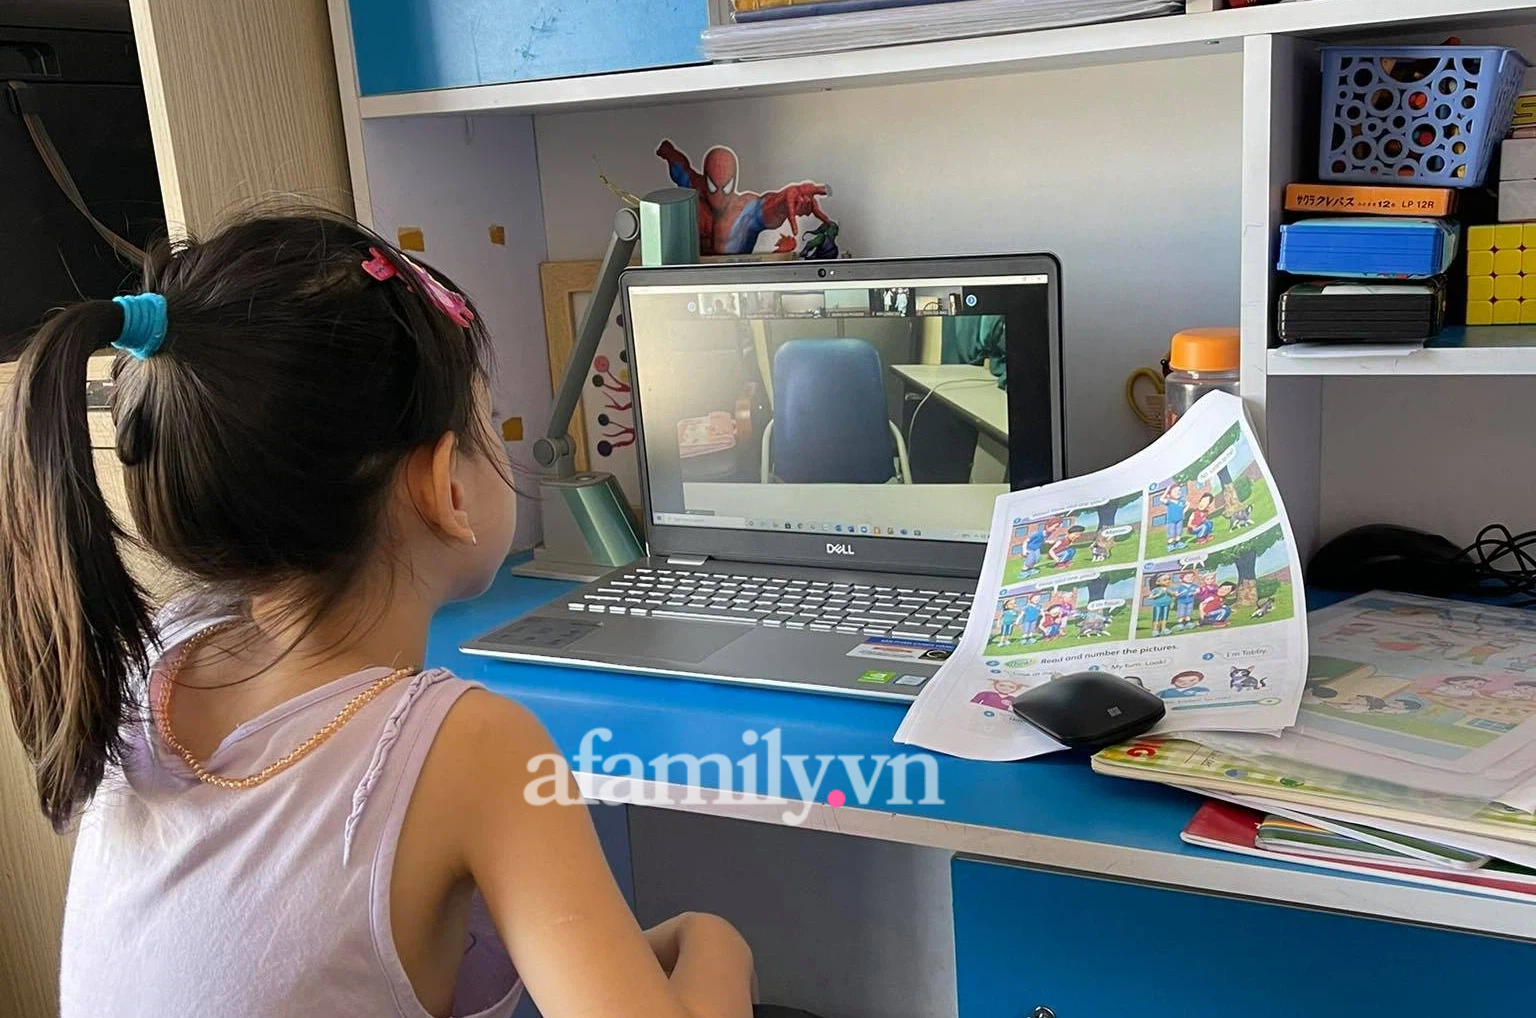 Phụ huynh nghèo khó khăn khi con học online: Chắt bóp cả tháng để mắc wifi, có 1 chiếc máy tính là chuyện xa vời - Ảnh 2.